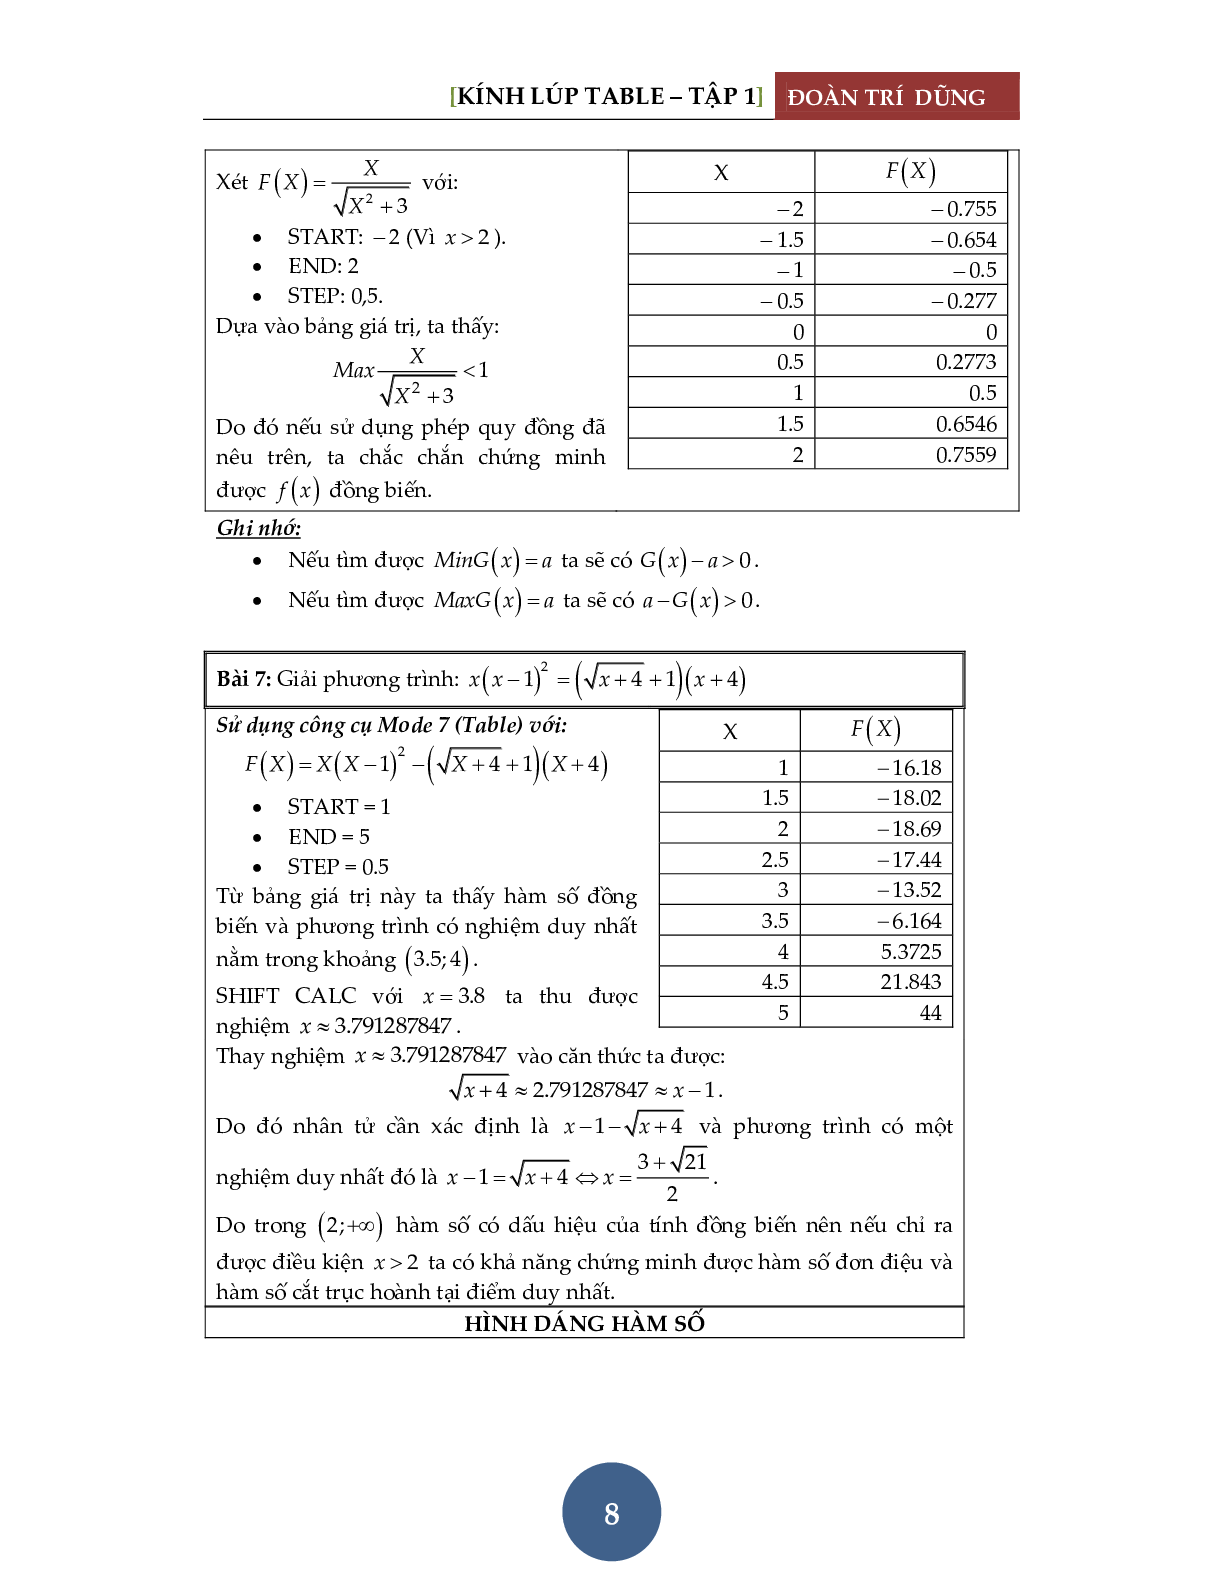 Giải phương trình bằng máy tính Casio – Tập 1: Đánh giá hàm đơn điệu (trang 9)